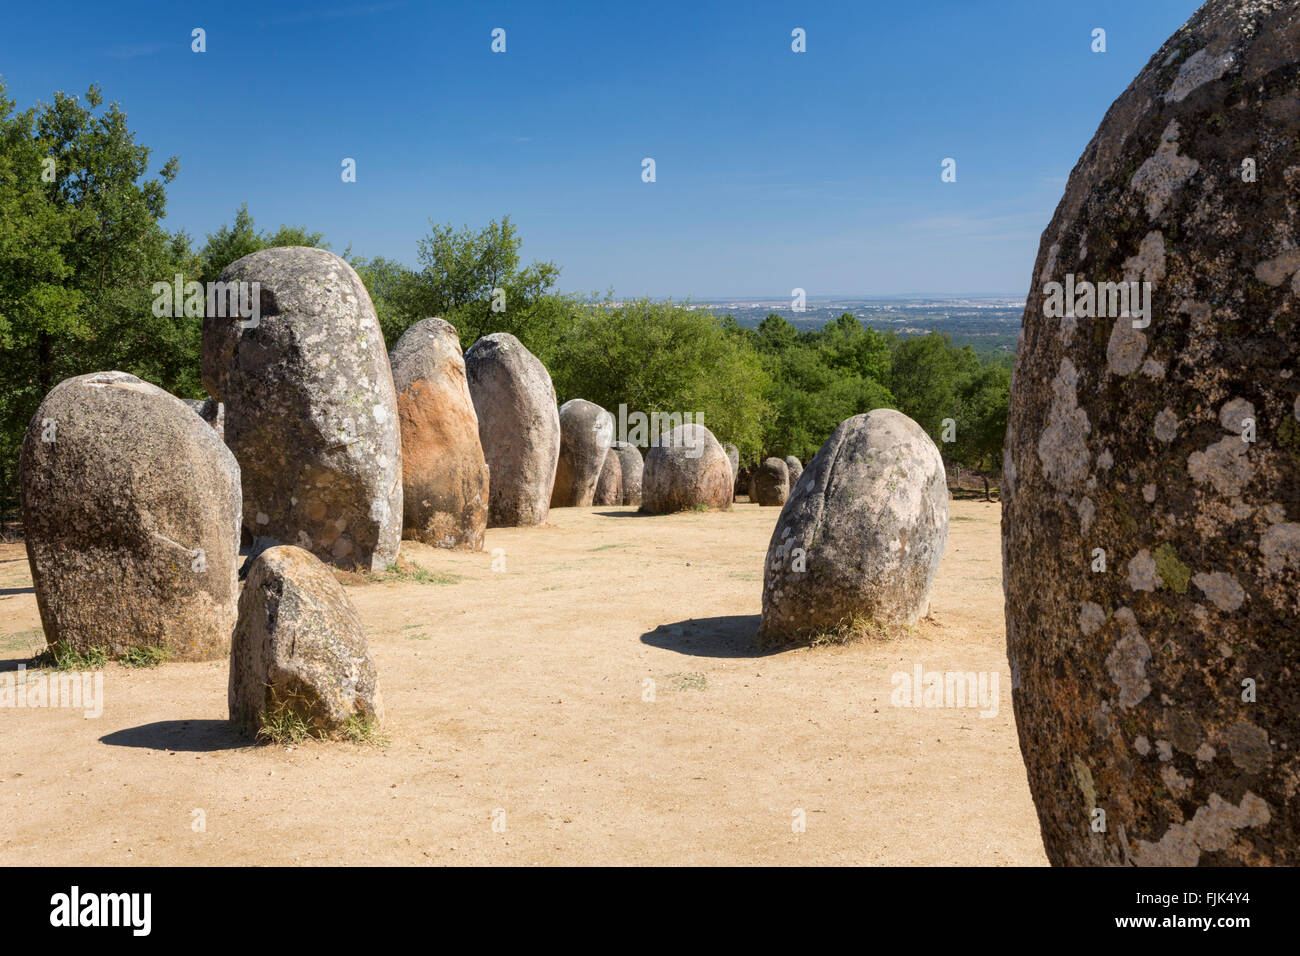 Il Almendes Cromlech, un preistorico neolitico cerchio di pietra vicino a Evora nella regione di Alentejo, Portogallo. Europea di età della pietra megaliti. Foto Stock